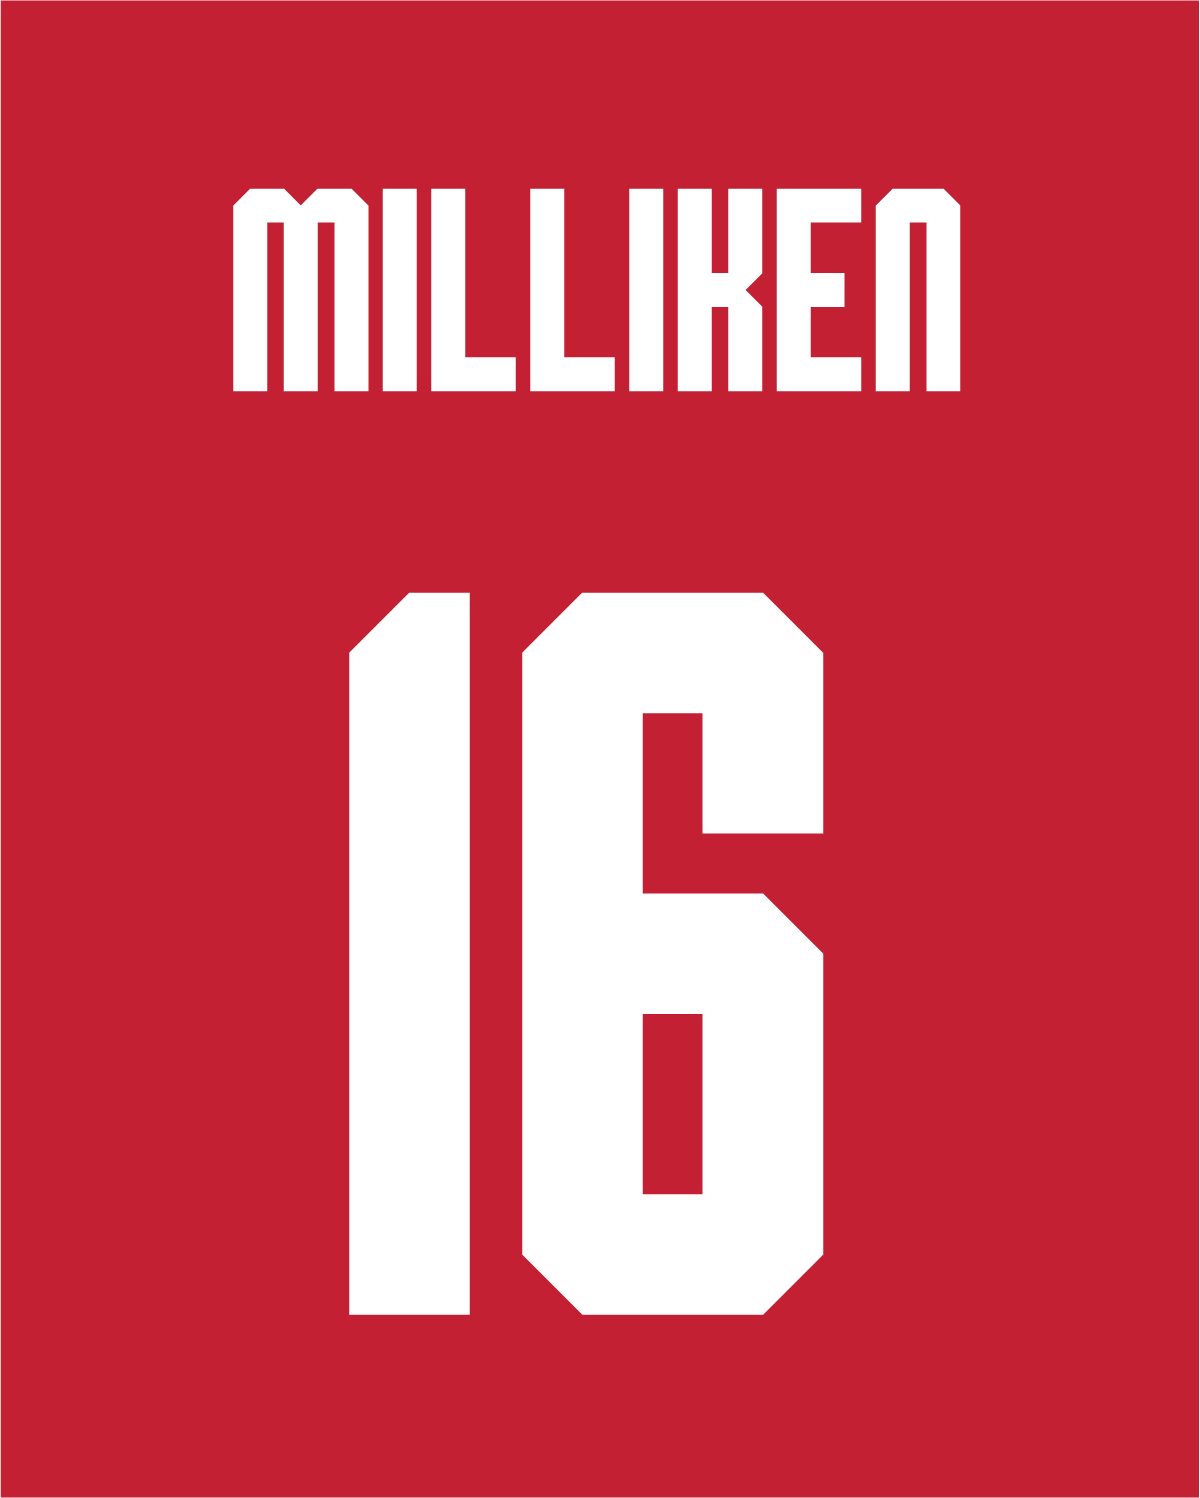 Reagan Milliken | #16